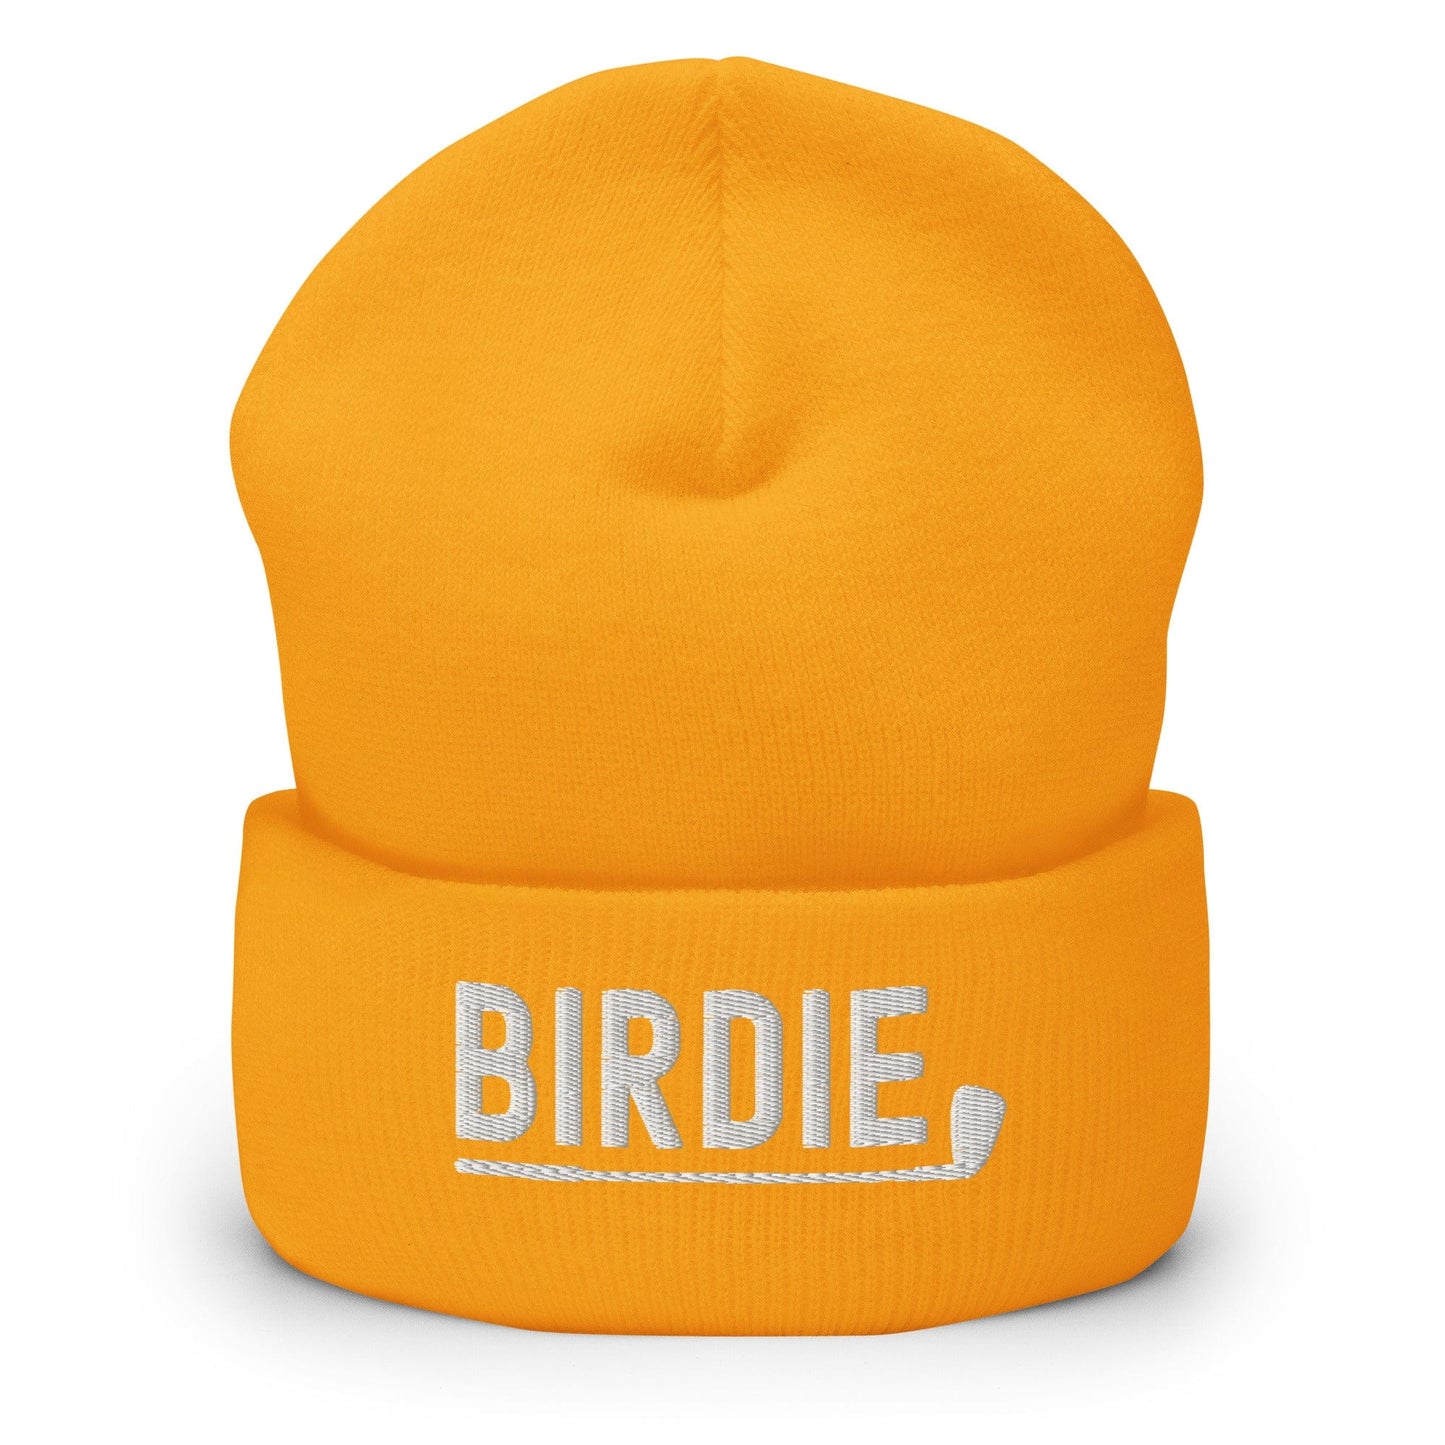 Funny Golfer Gifts  Beanie Gold Birdie Hat Beanie